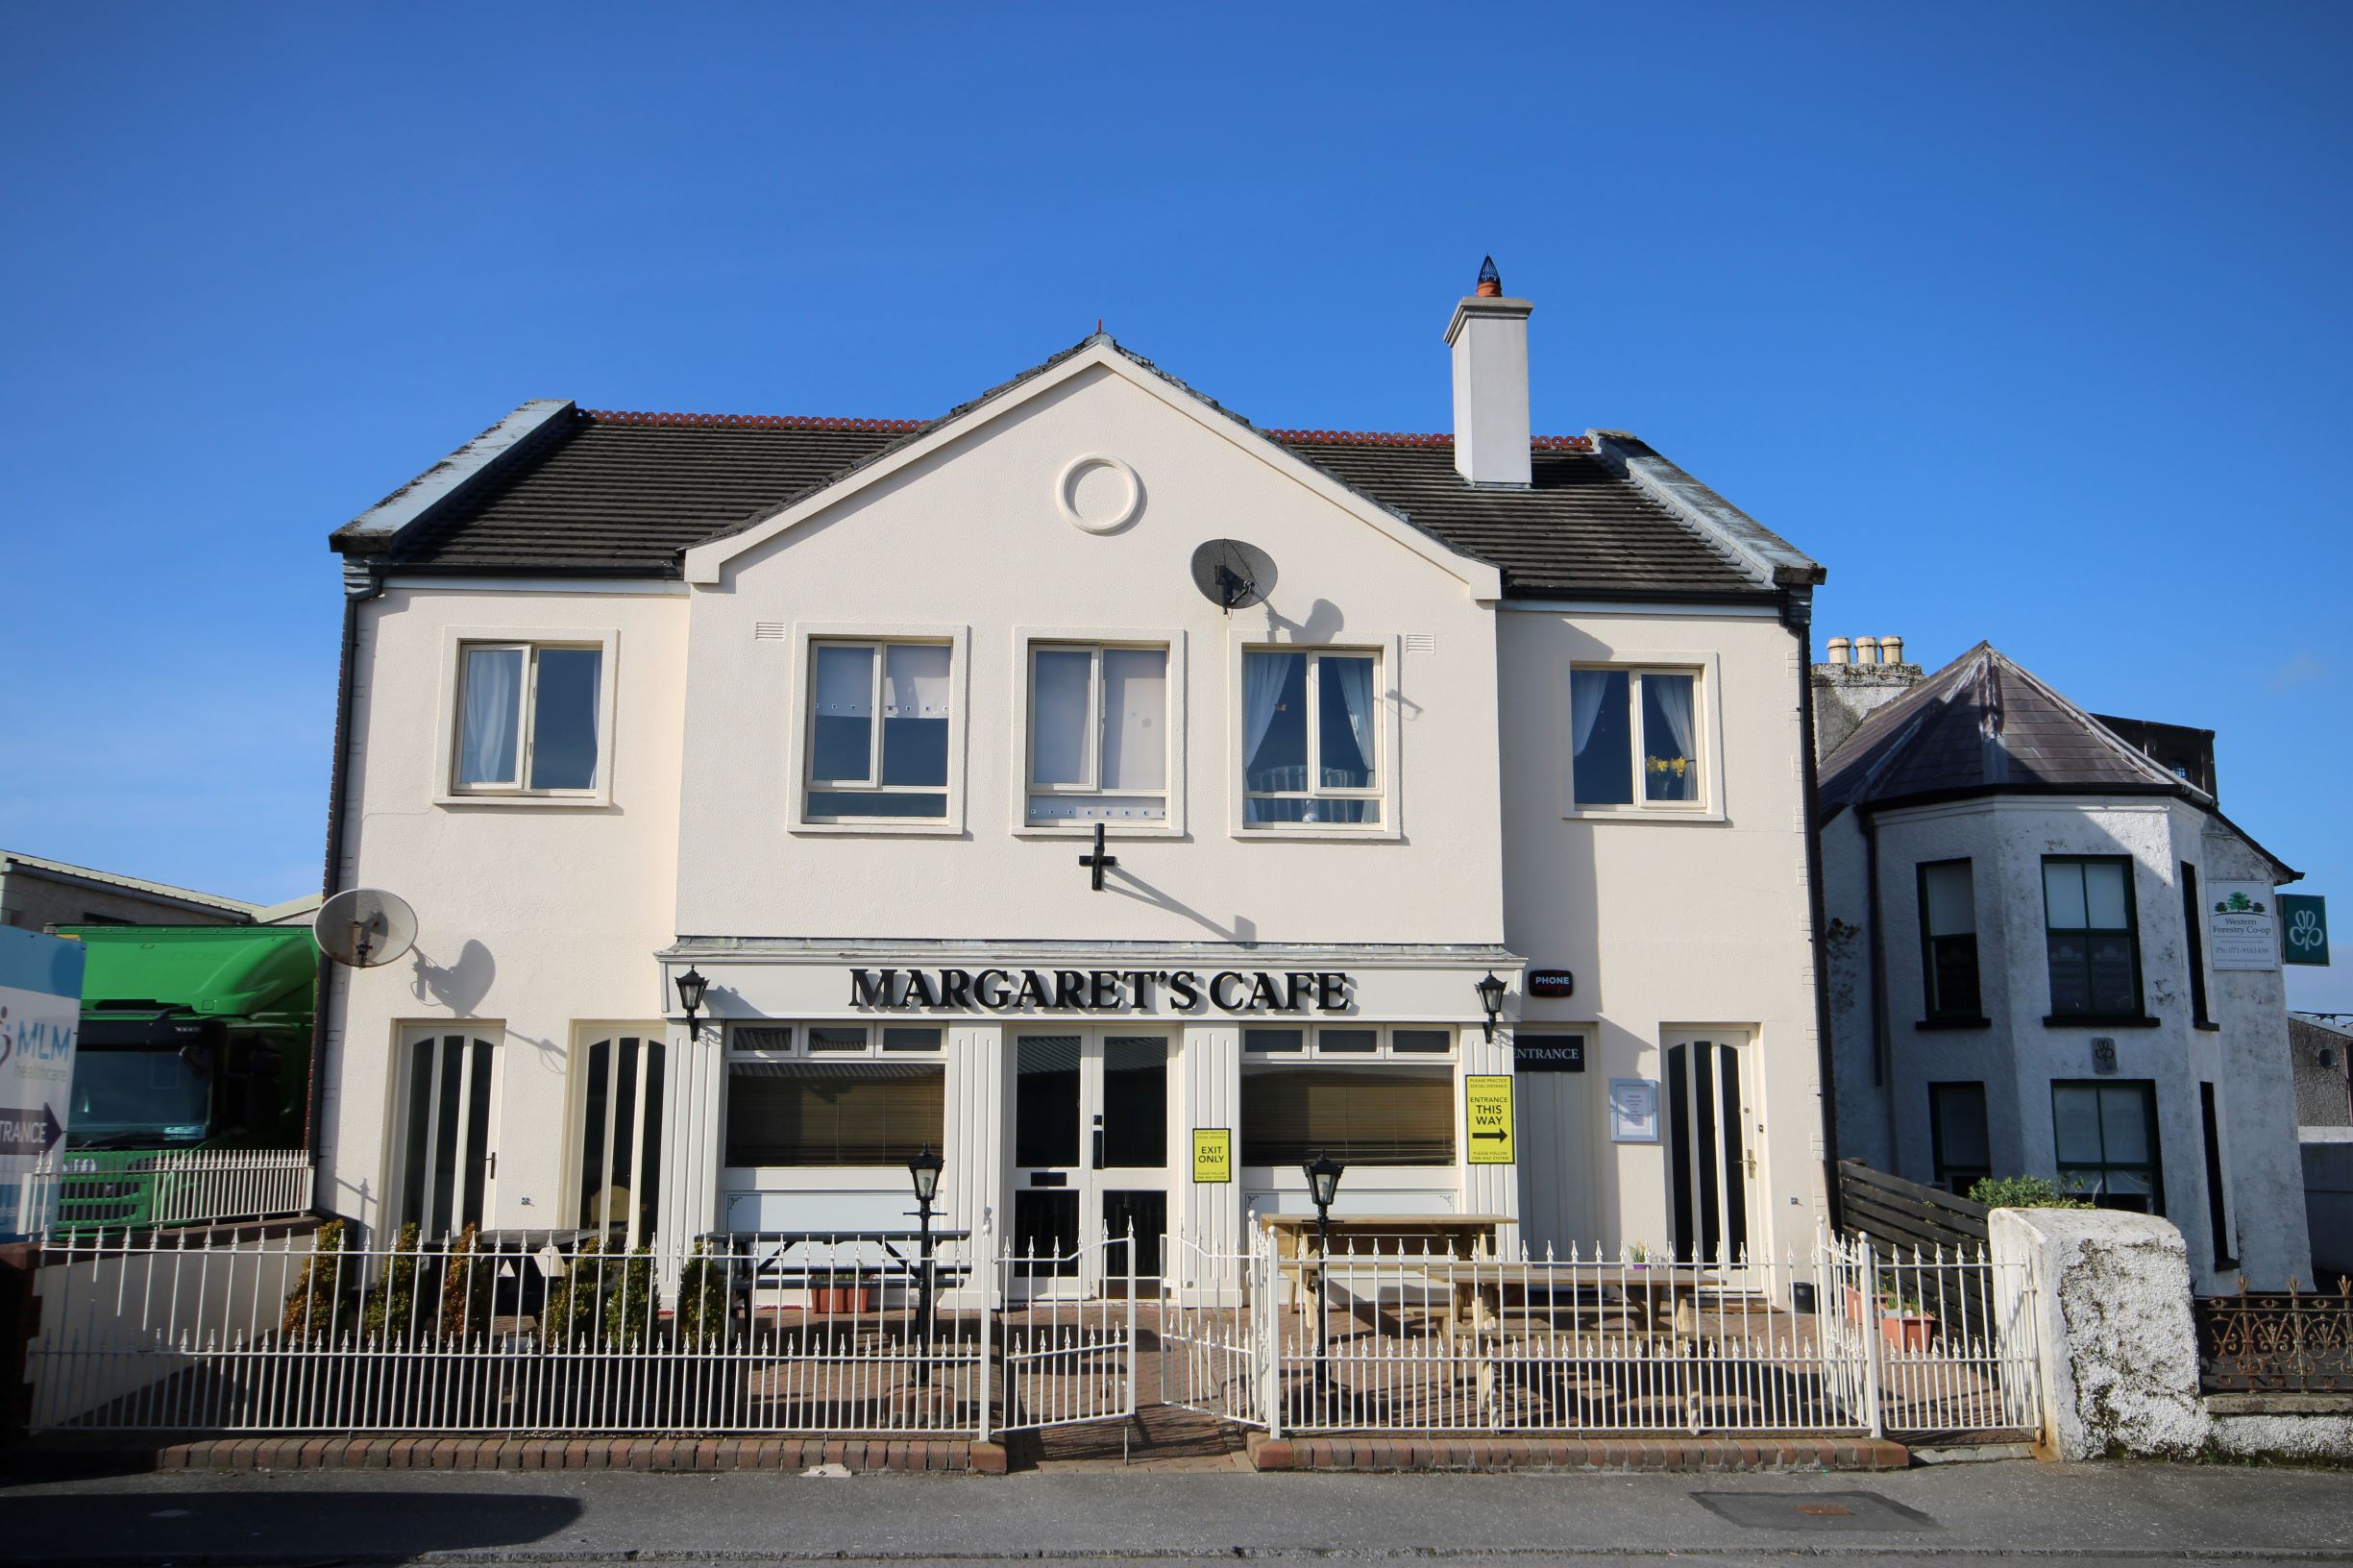 Margaret's Cafe, Finisklin Road, Sligo, Co. Sligo, F91 DY20, Ireland